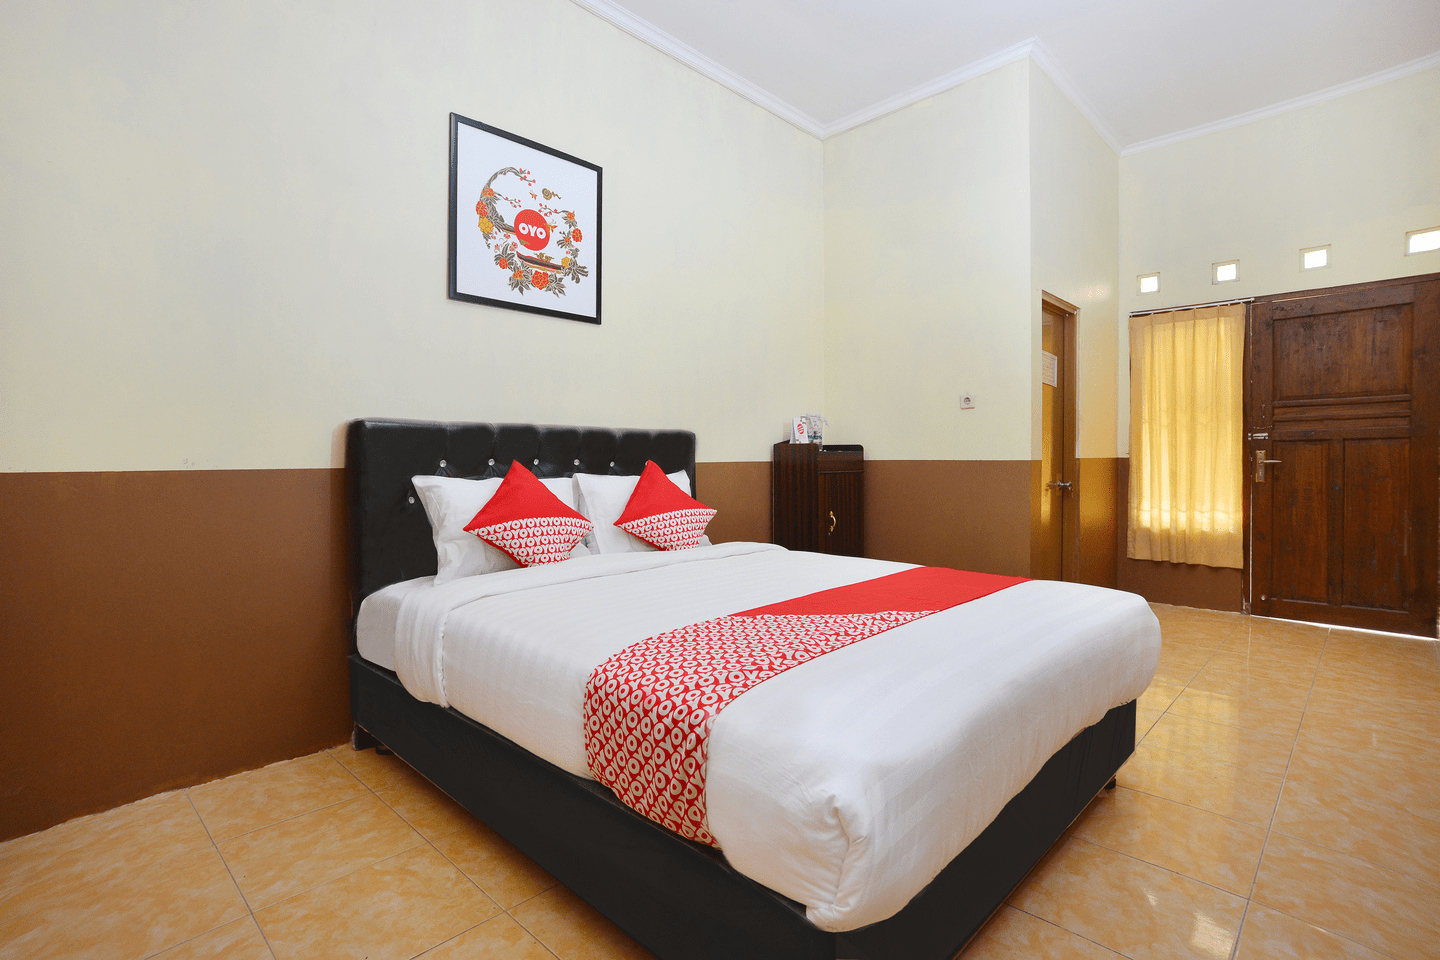 Bedroom 1, OYO 810 Idola Residence, Yogyakarta